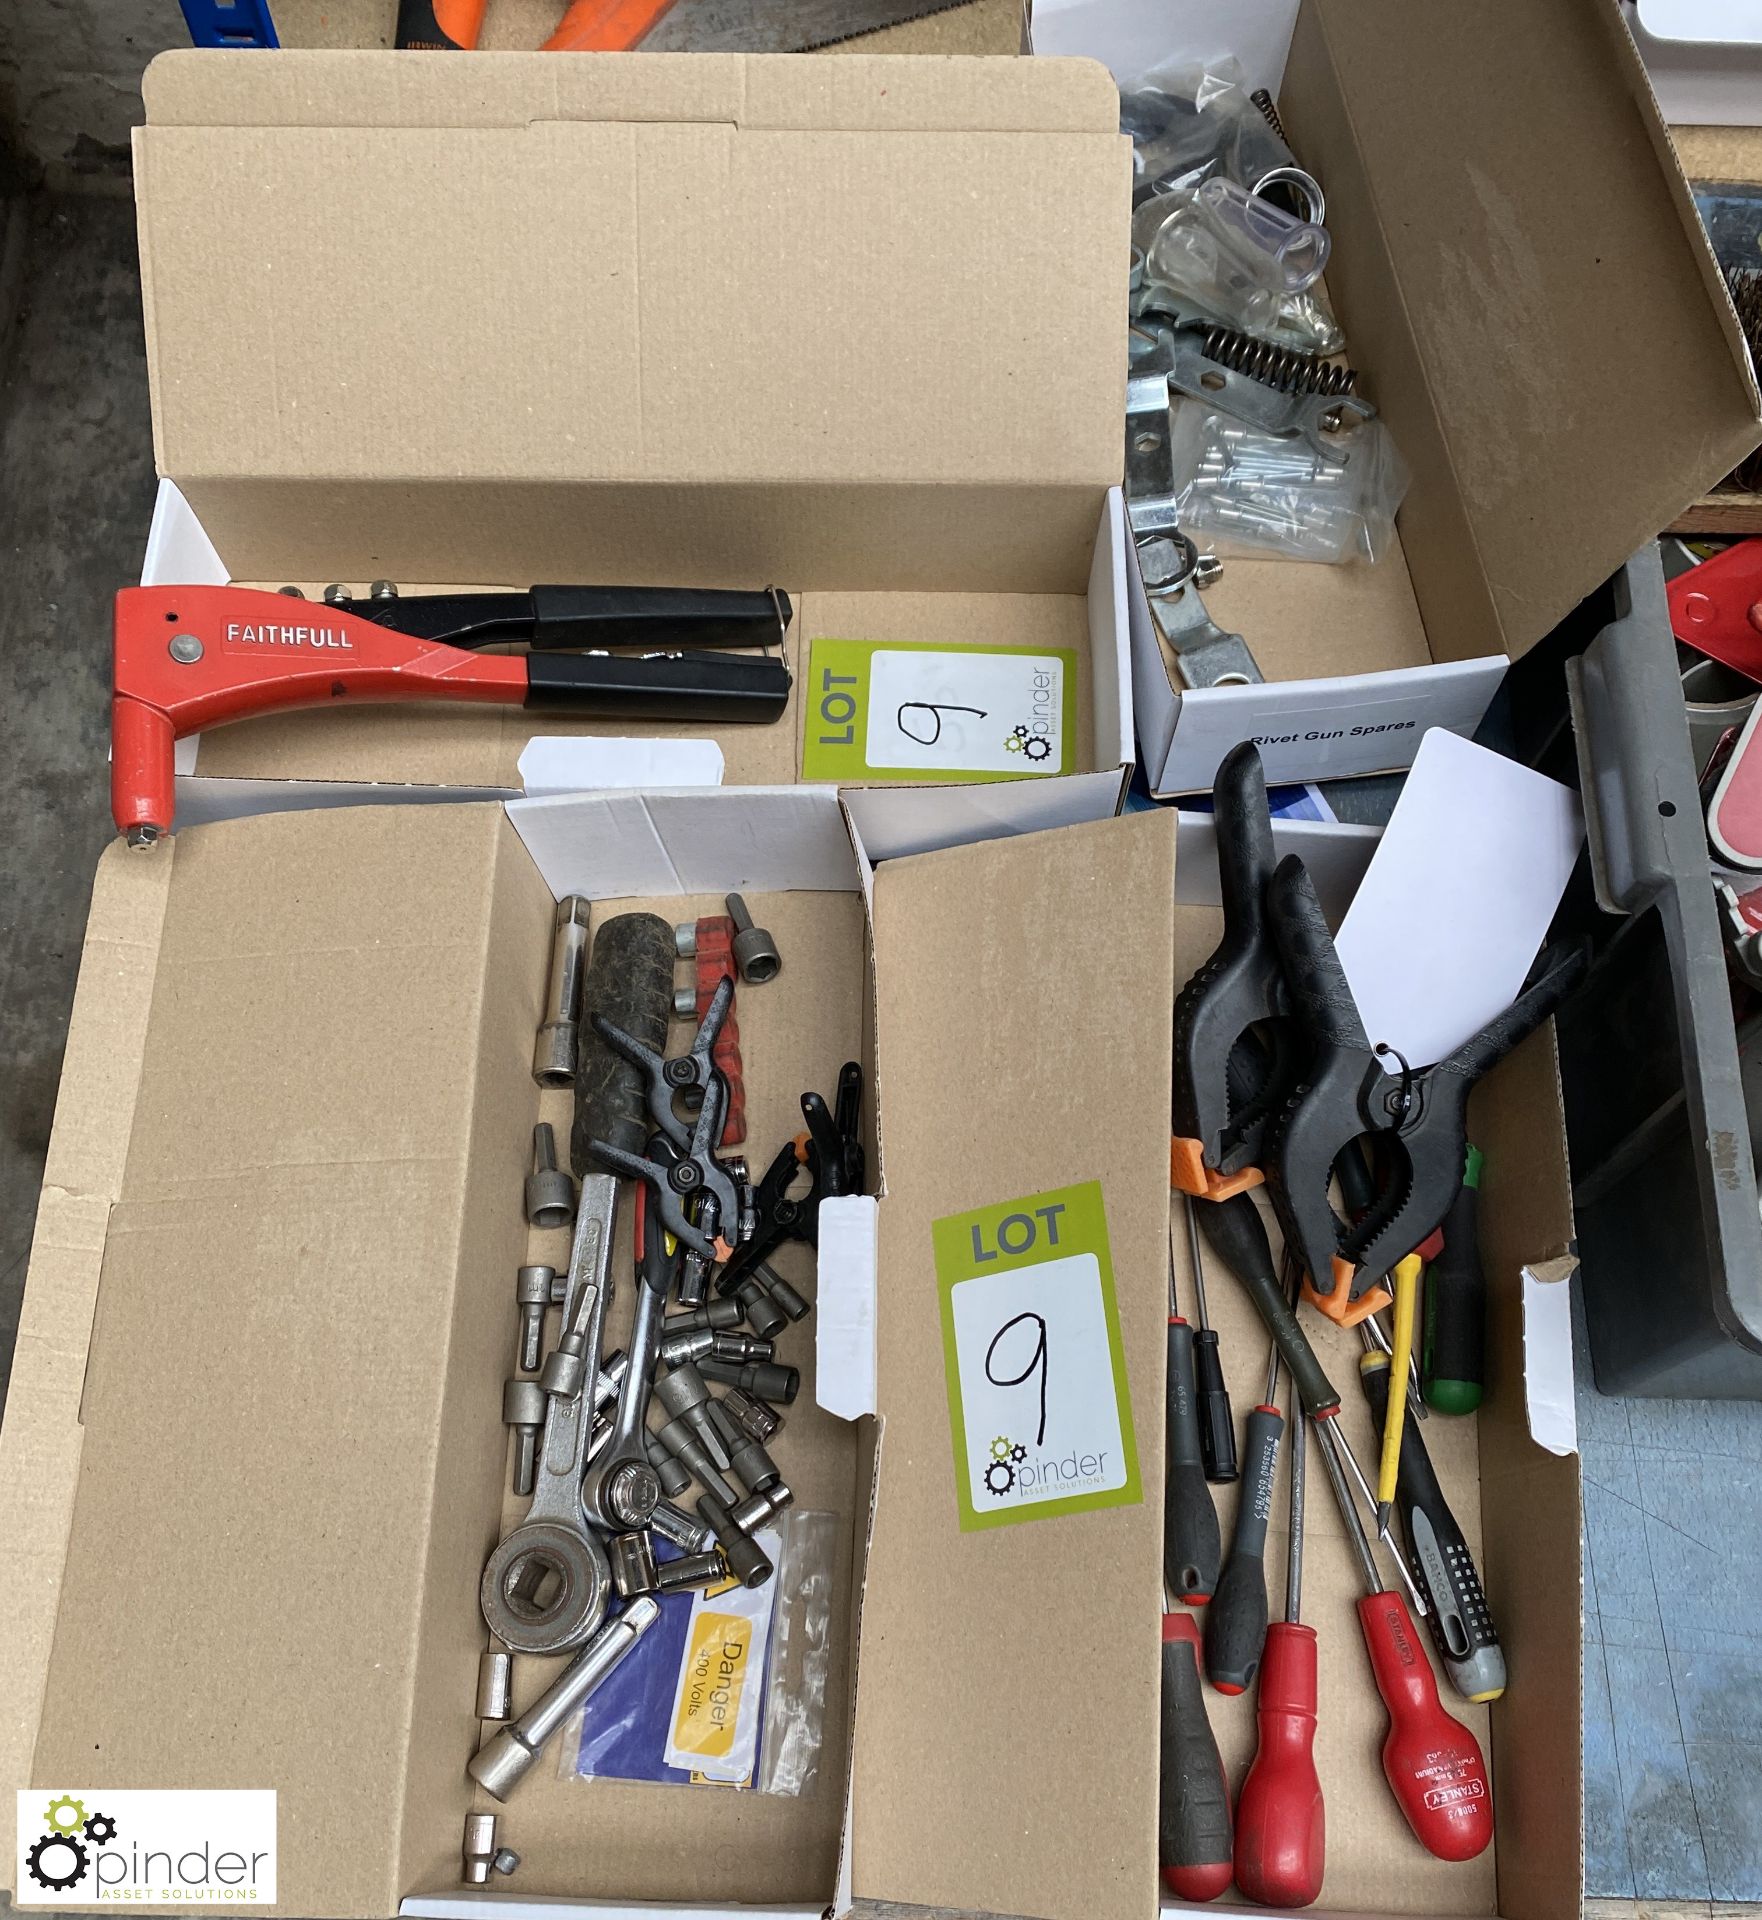 Quantity Hand Tools including pop riveter, clamps, screwdrivers, sockets, etc